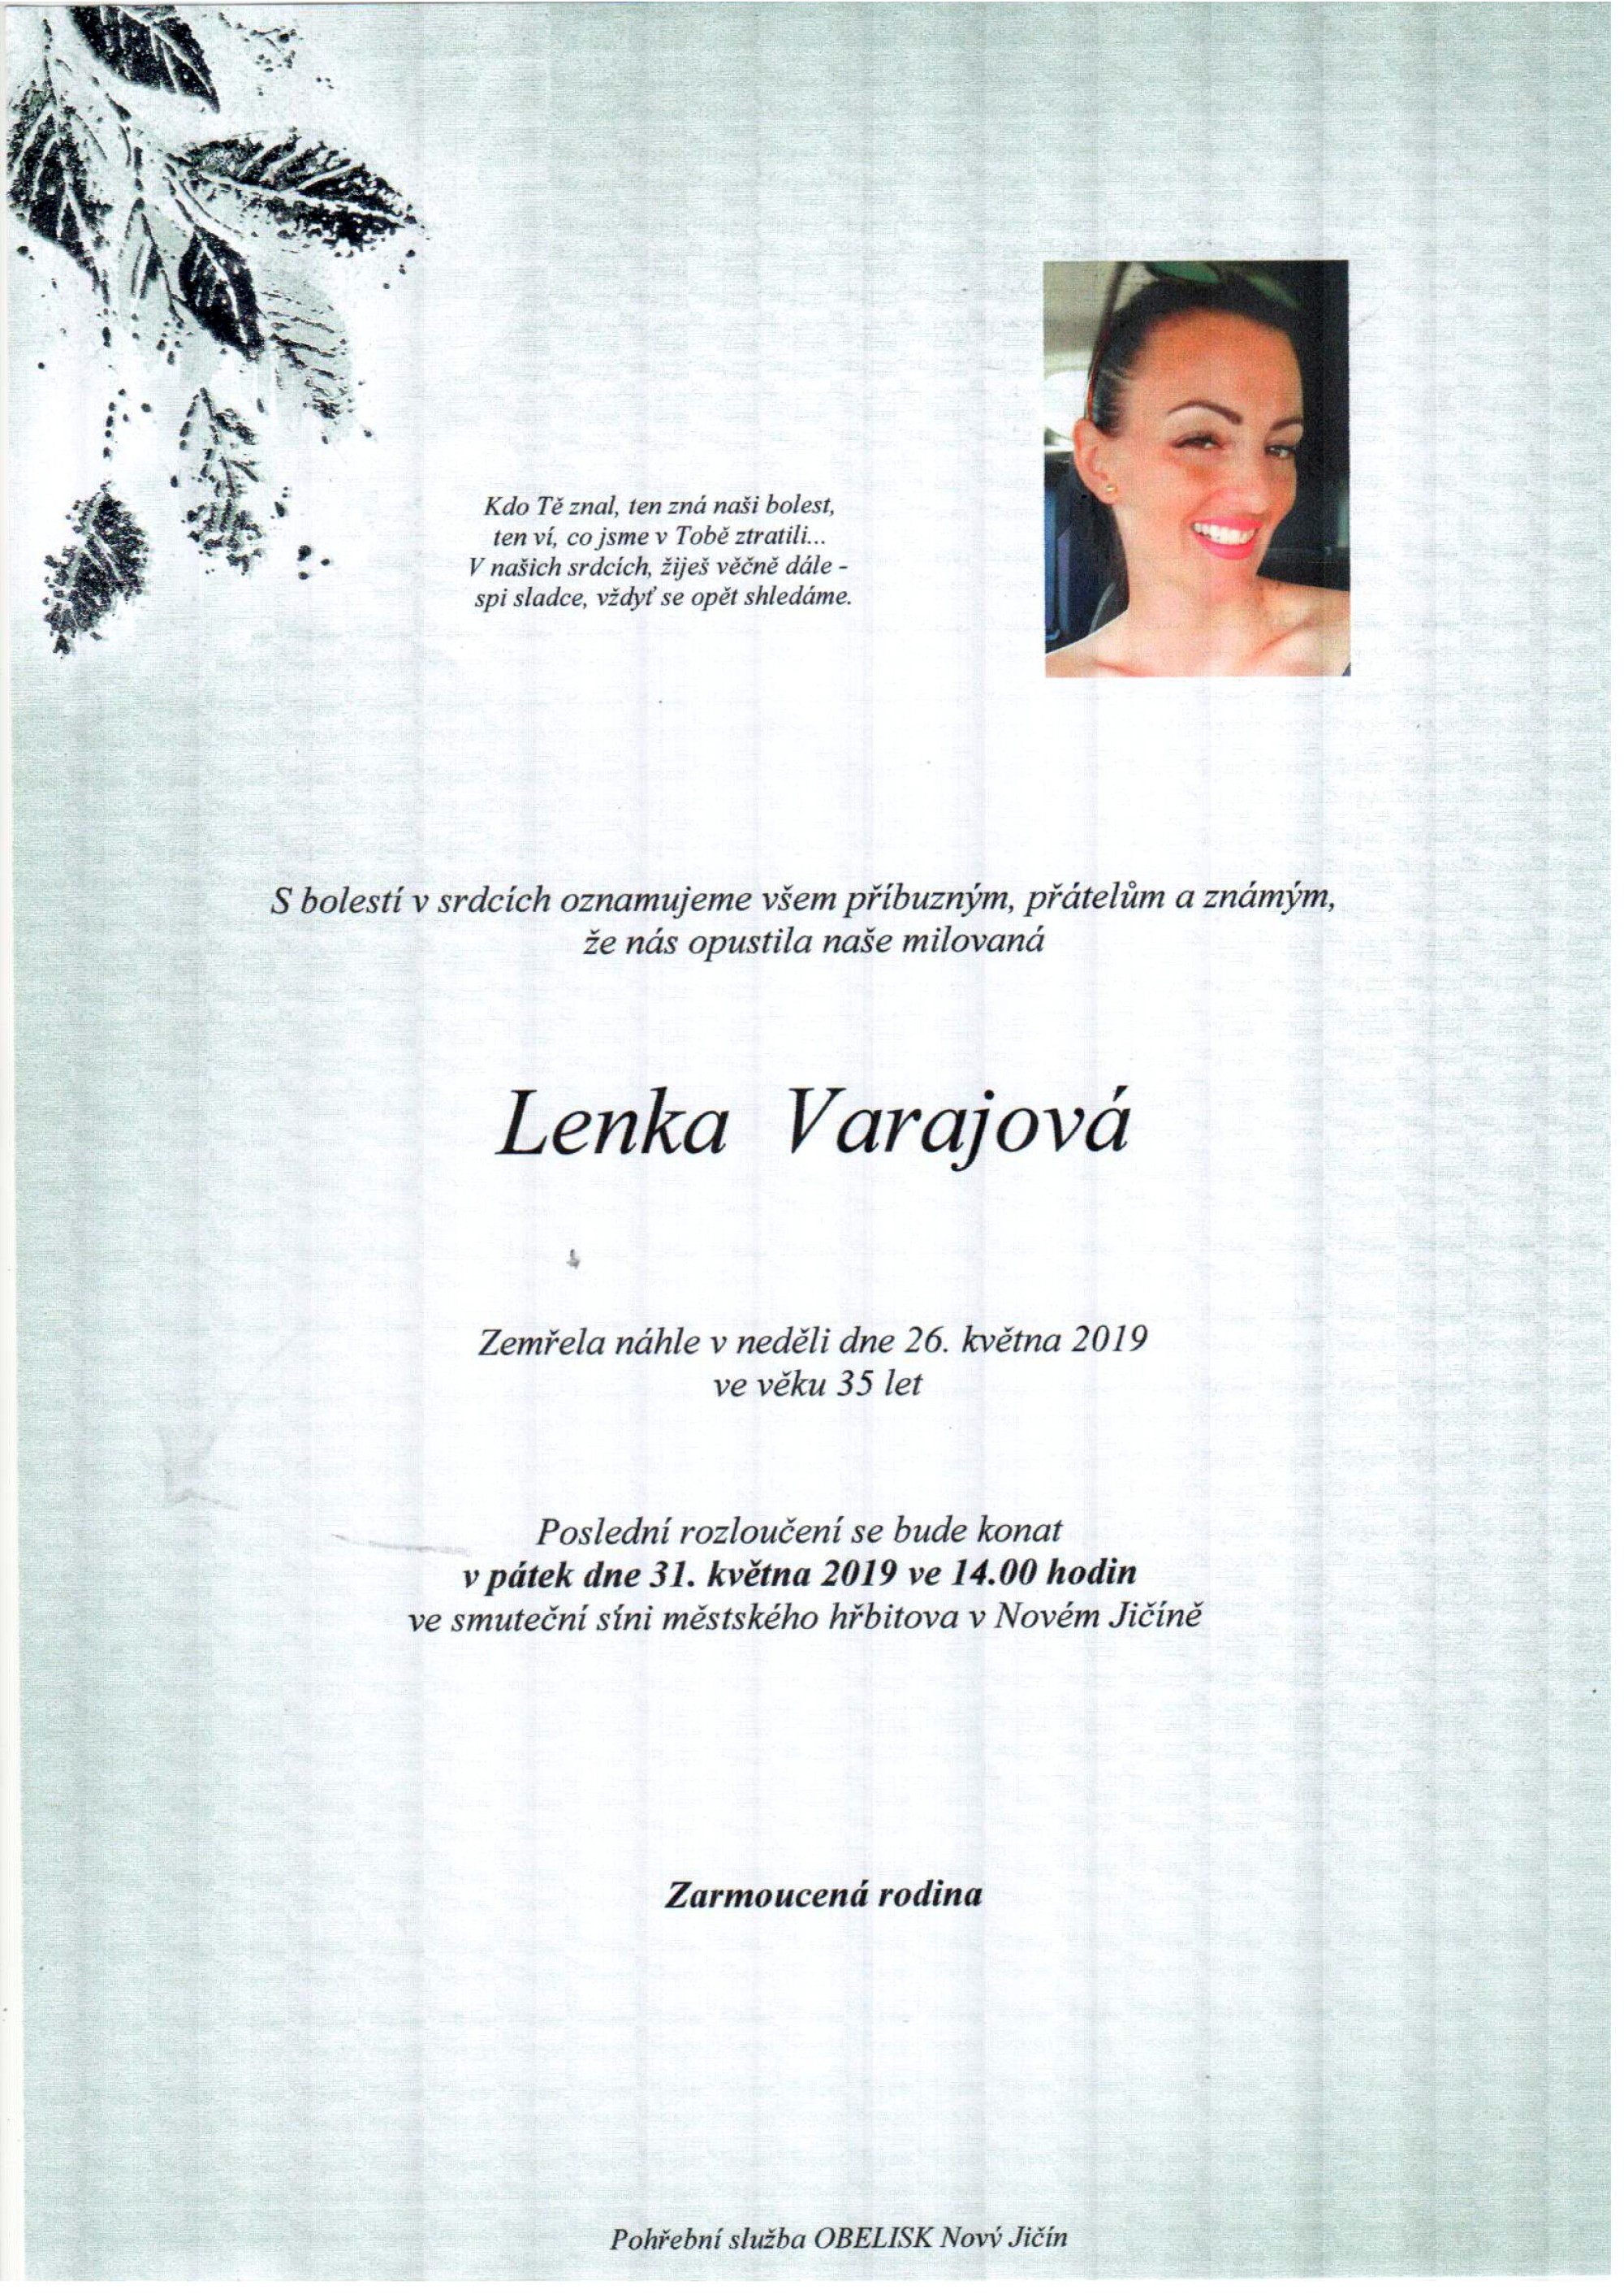 Lenka Varajová